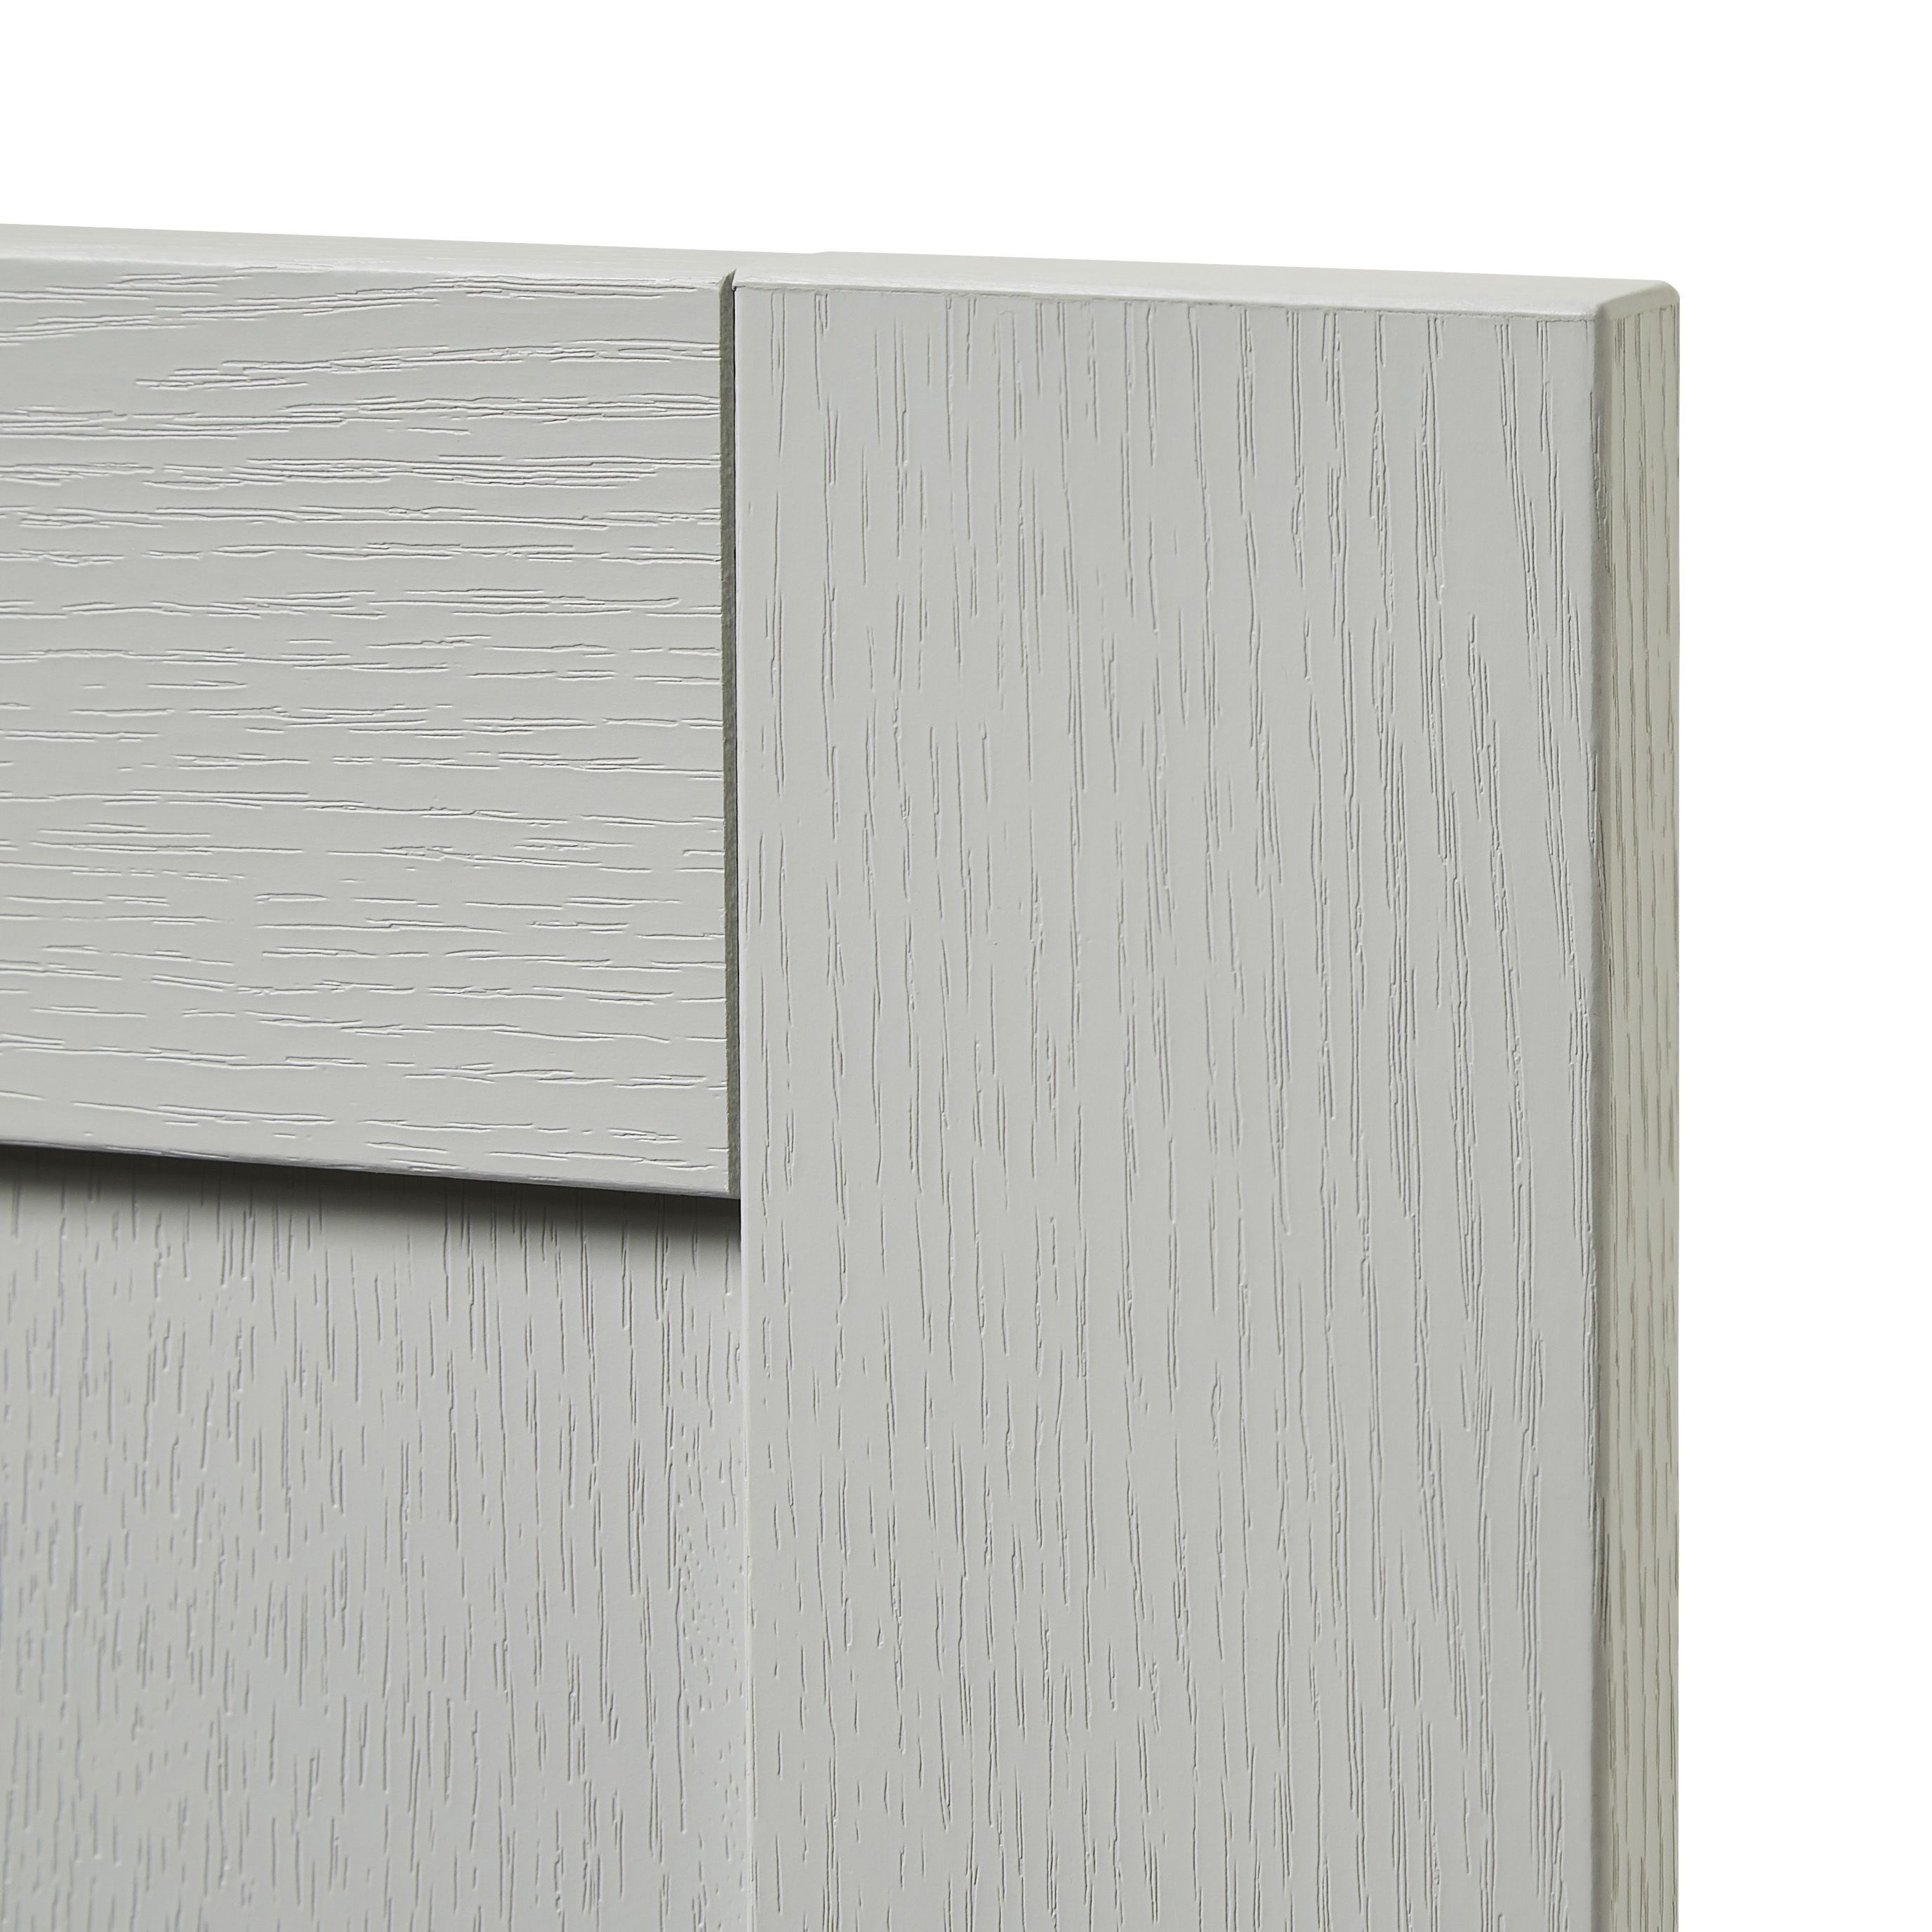 GoodHome Alpinia Matt grey painted wood effect shaker Drawer front, bridging door & bi fold door, (W)500mm (H)356mm (T)18mm